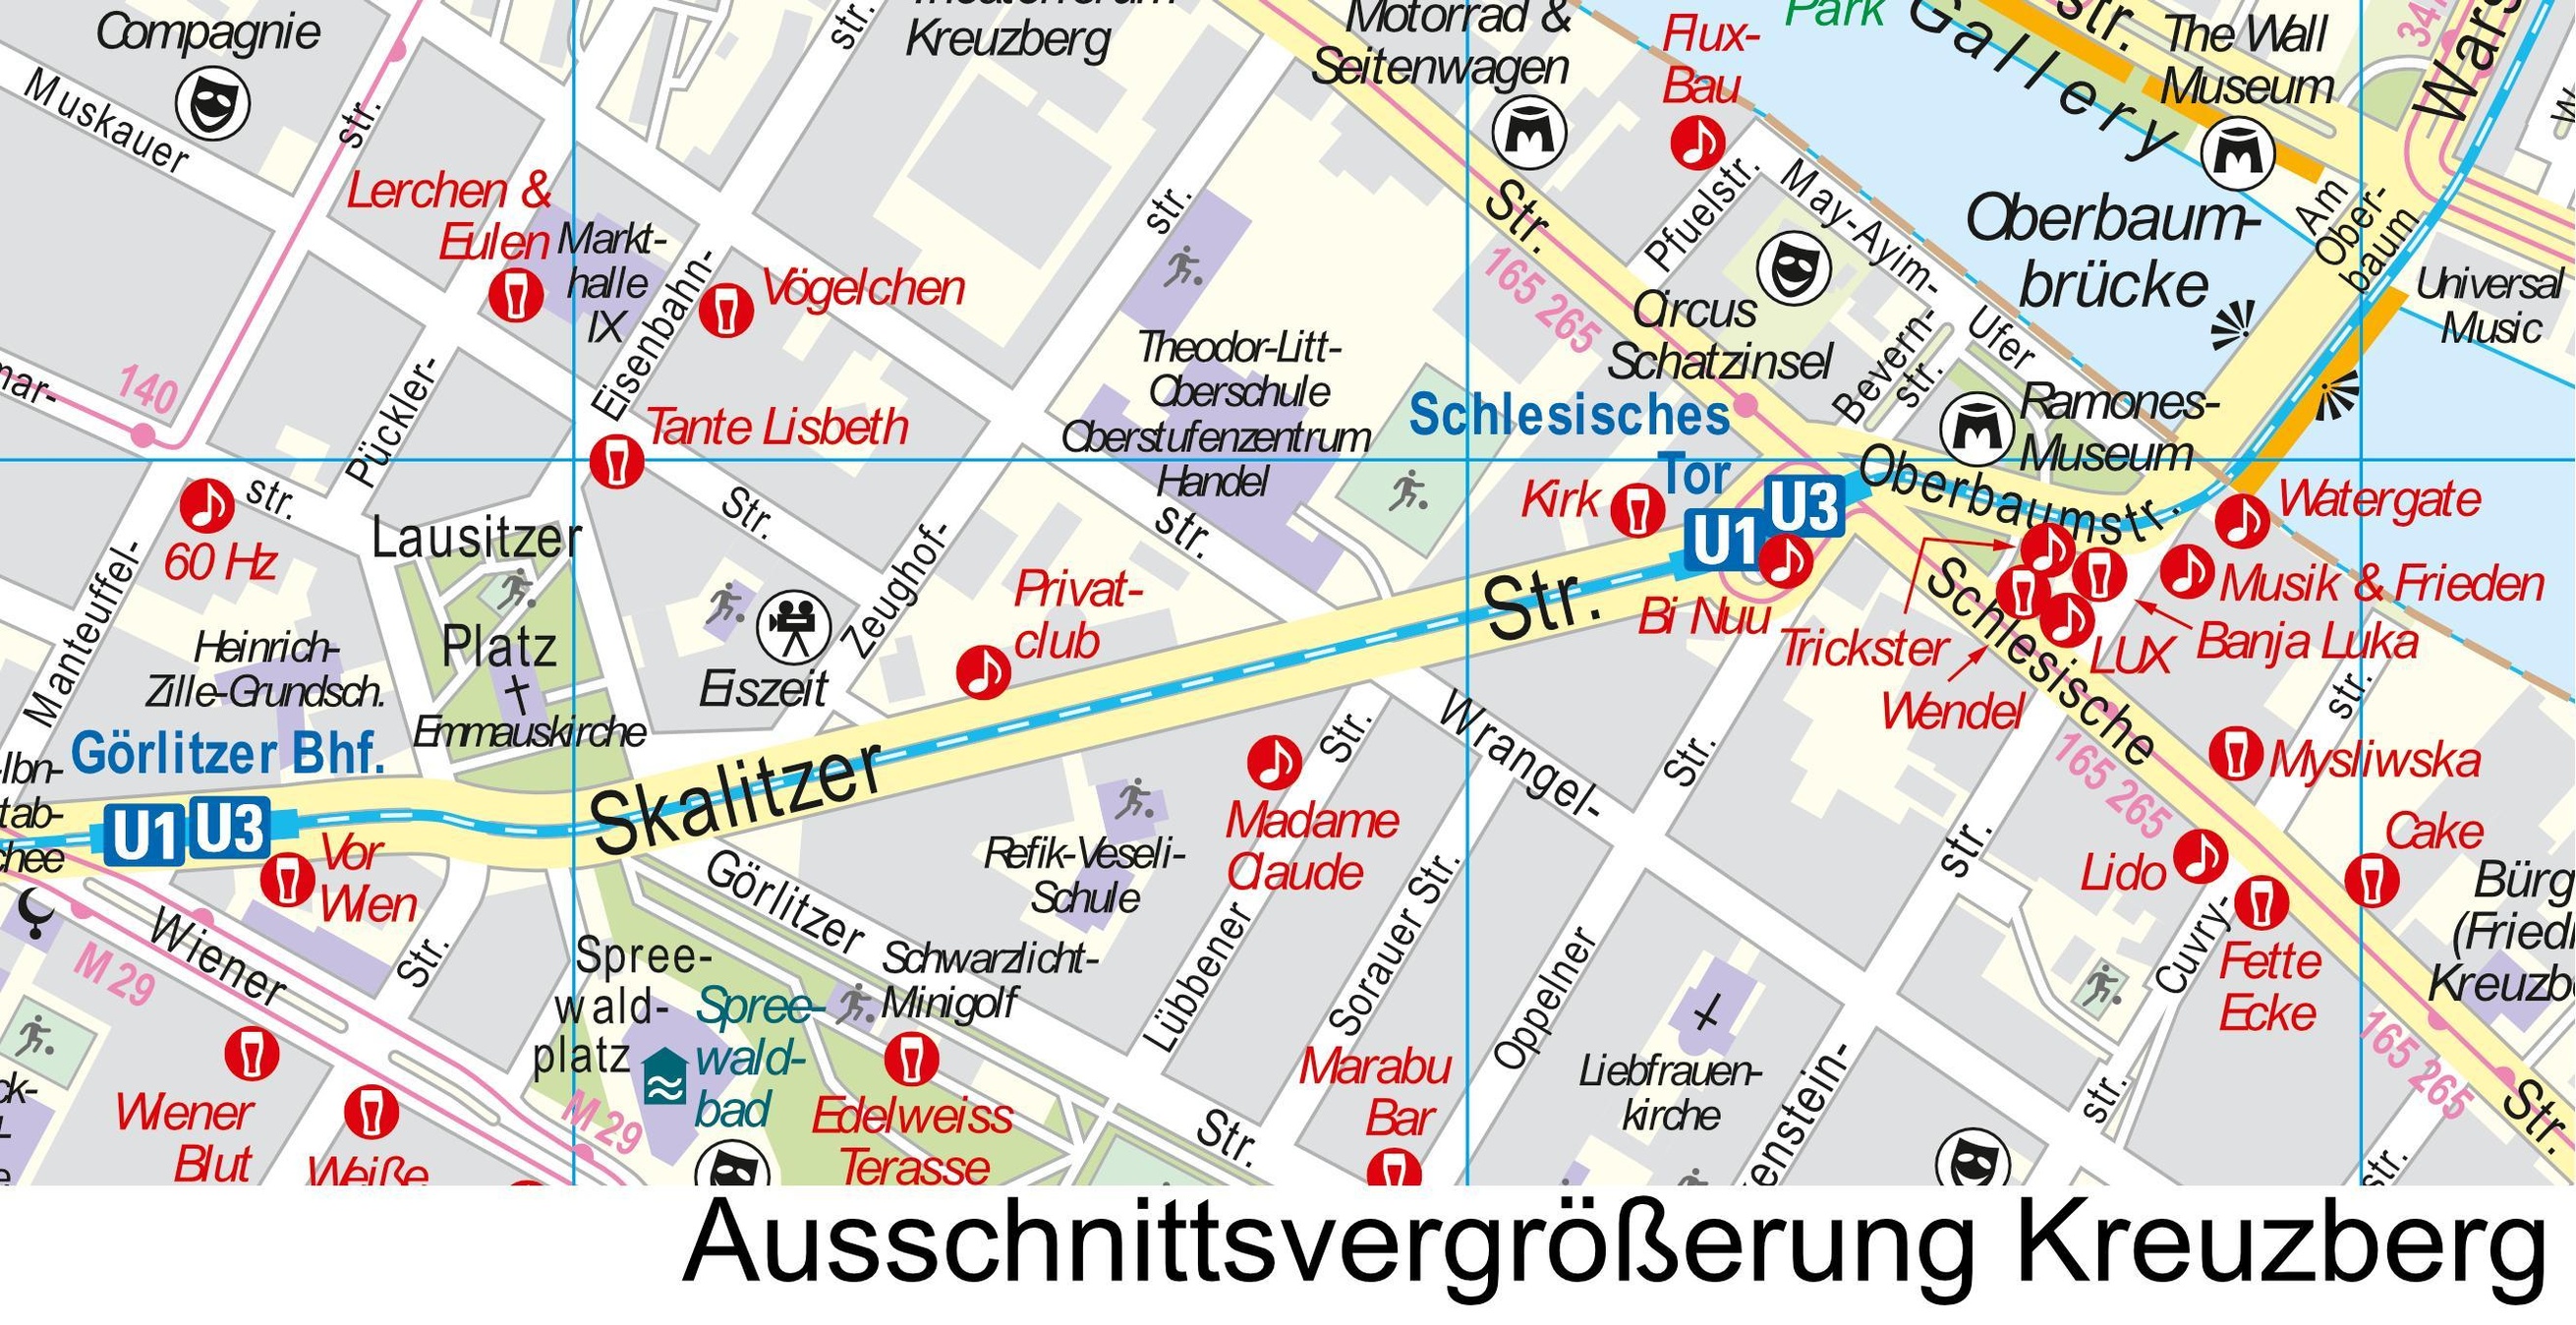 Stadtplan Berlin Cool City Map Top Highlights Kultur Bars Clubs Buch